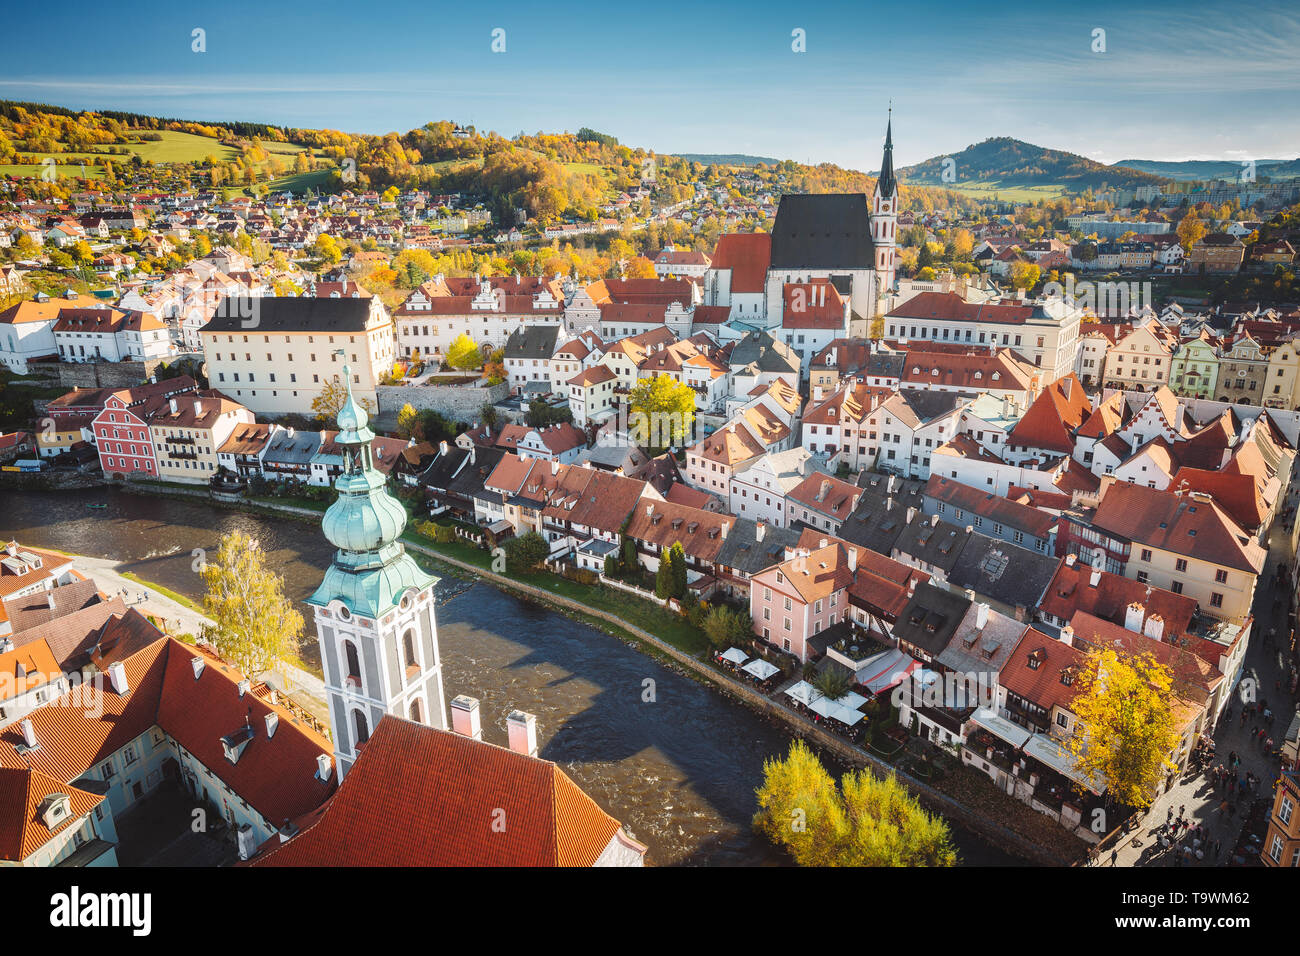 Vista aérea panorámica del centro histórico de la ciudad de Cesky Krumlov, con el famoso castillo de Cesky Krumlov, un sitio del Patrimonio Mundial de la UNESCO desde 1992, en la bella ir Foto de stock